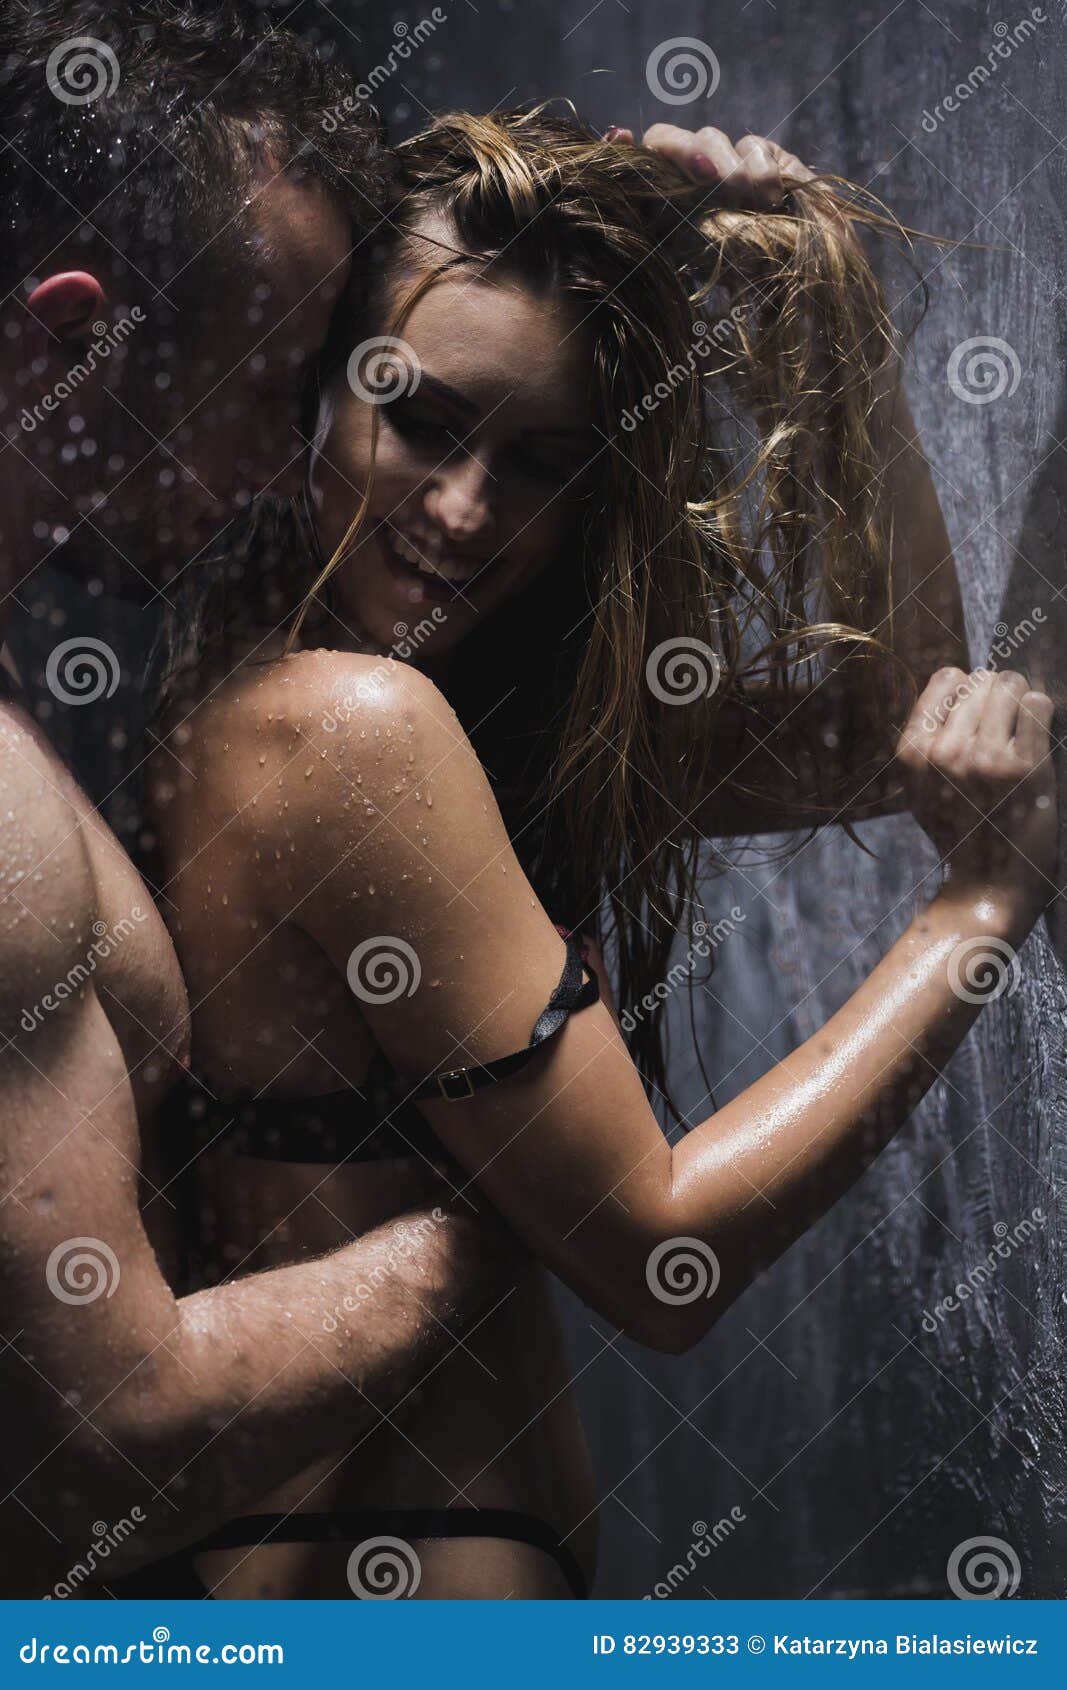 derek j lee recommends Women Taking Showers Together